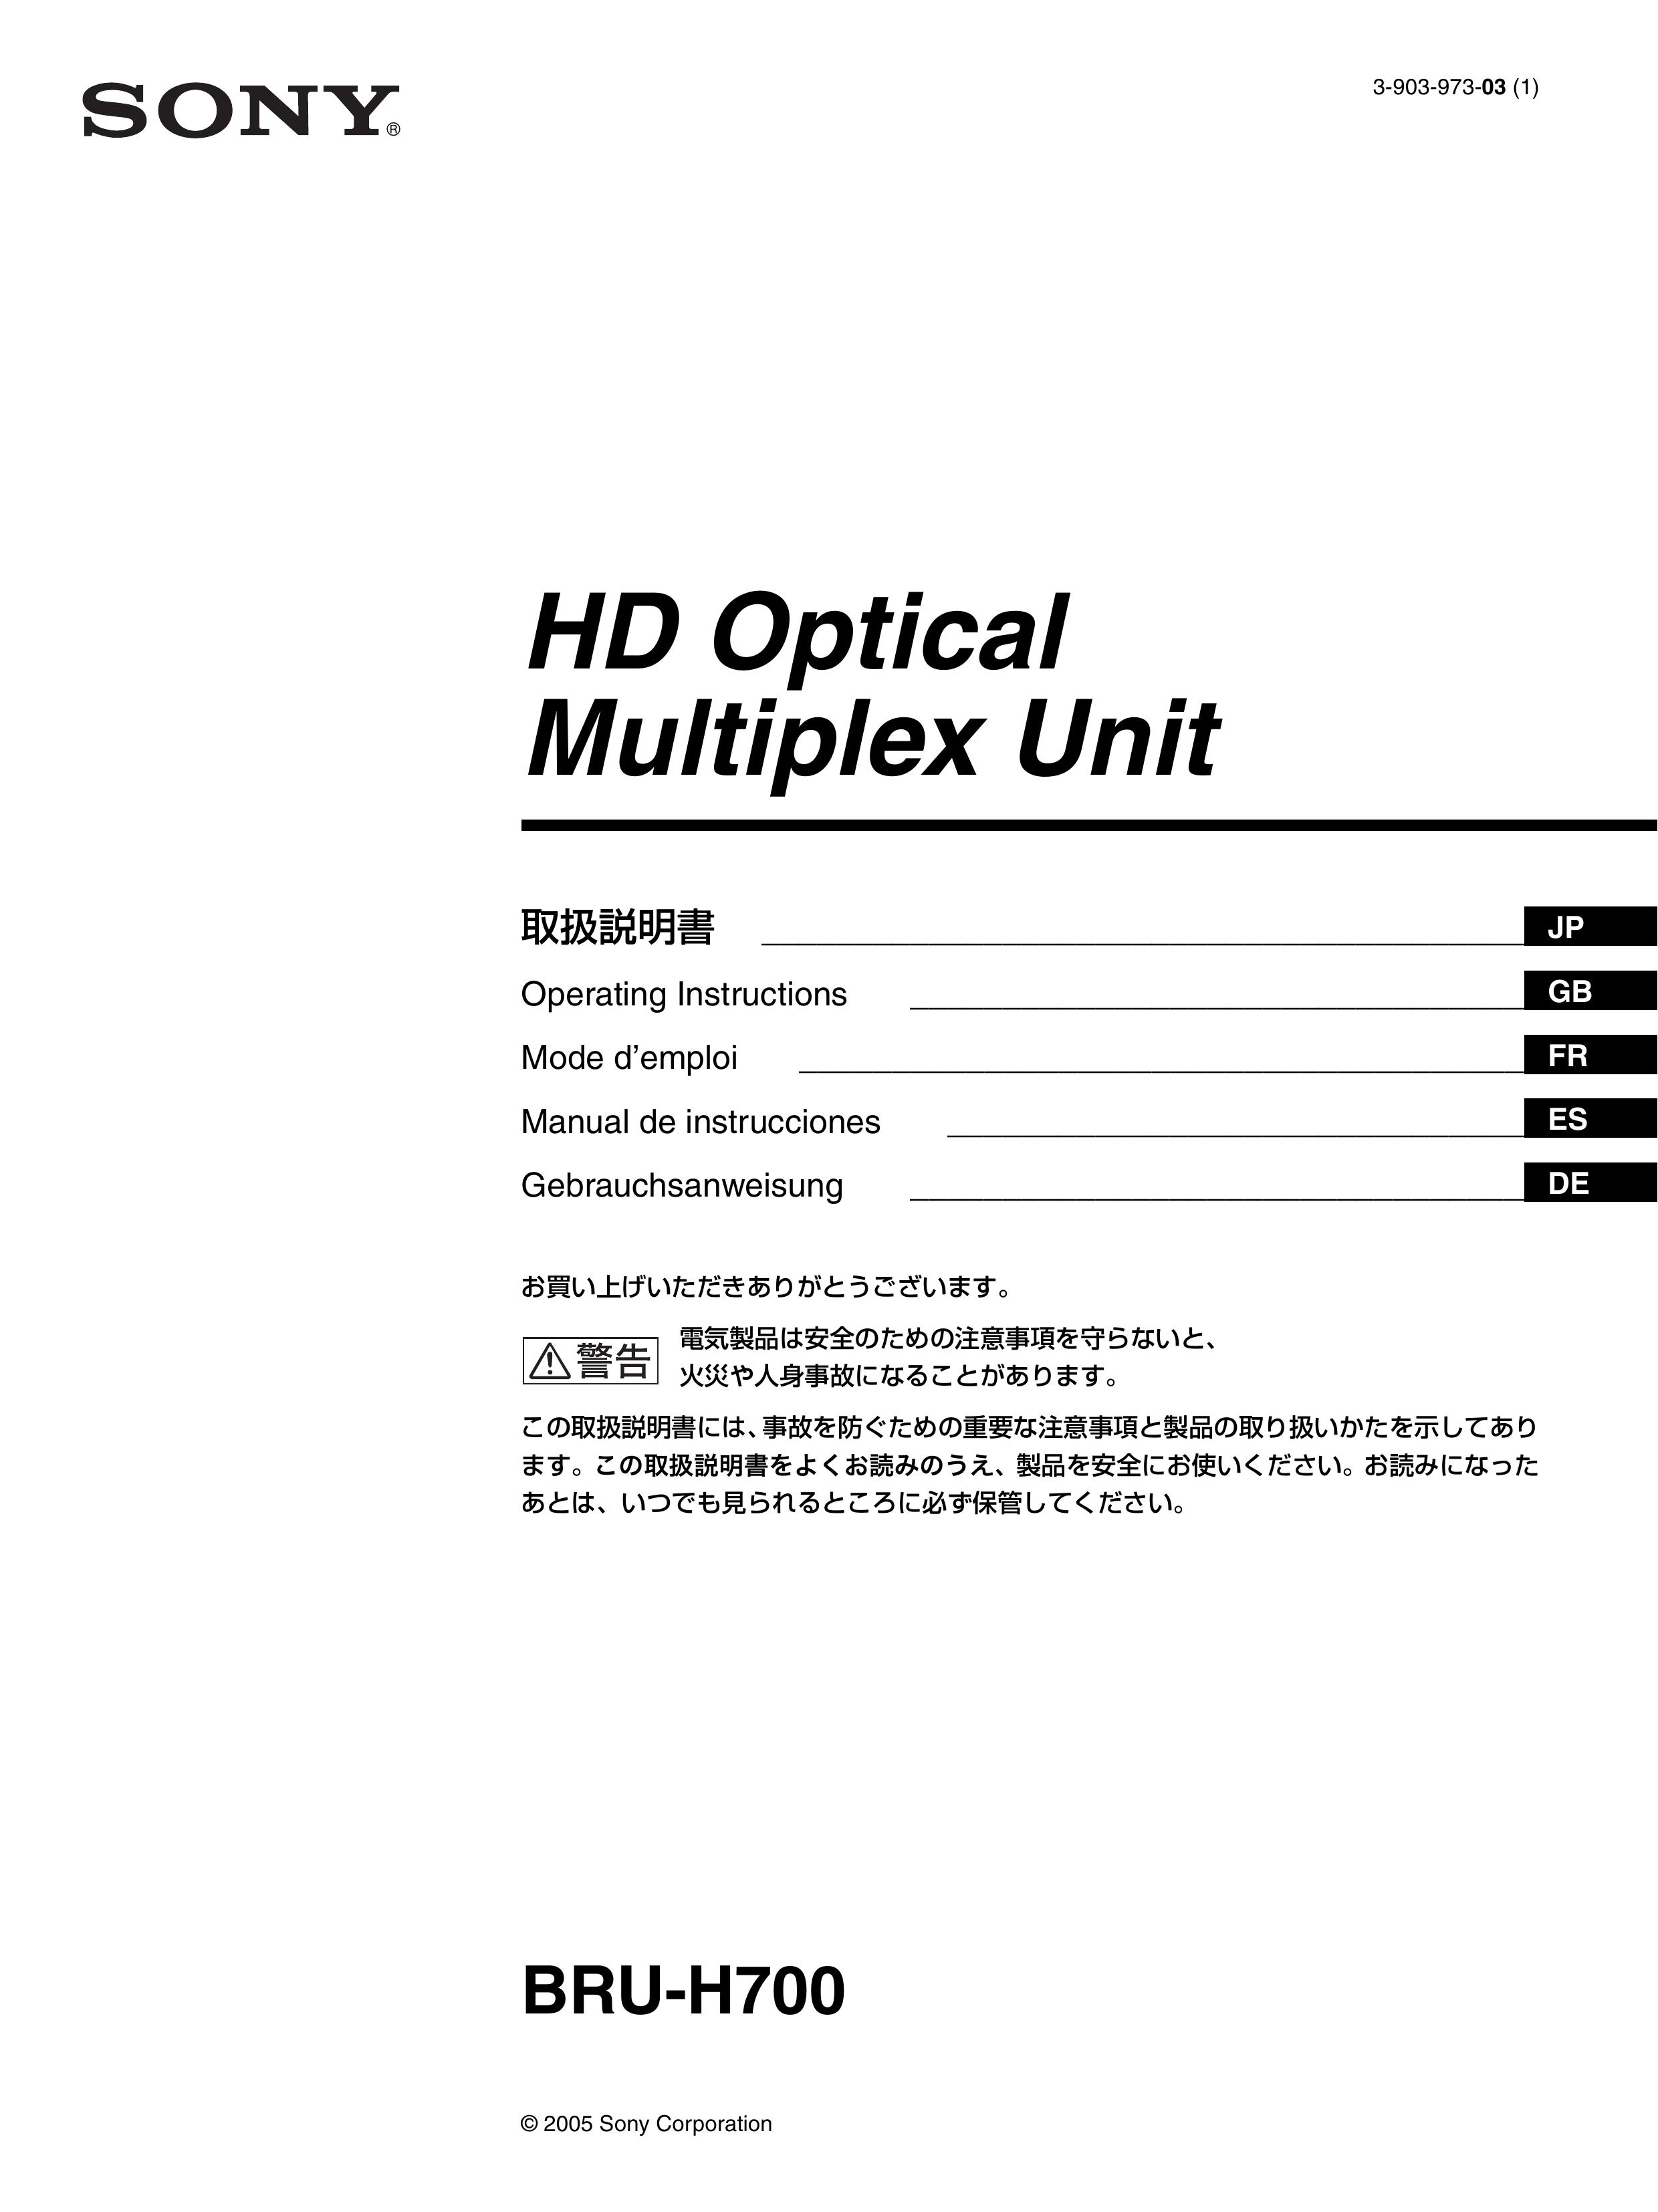 Sony BRU-H700 Camera Accessories User Manual